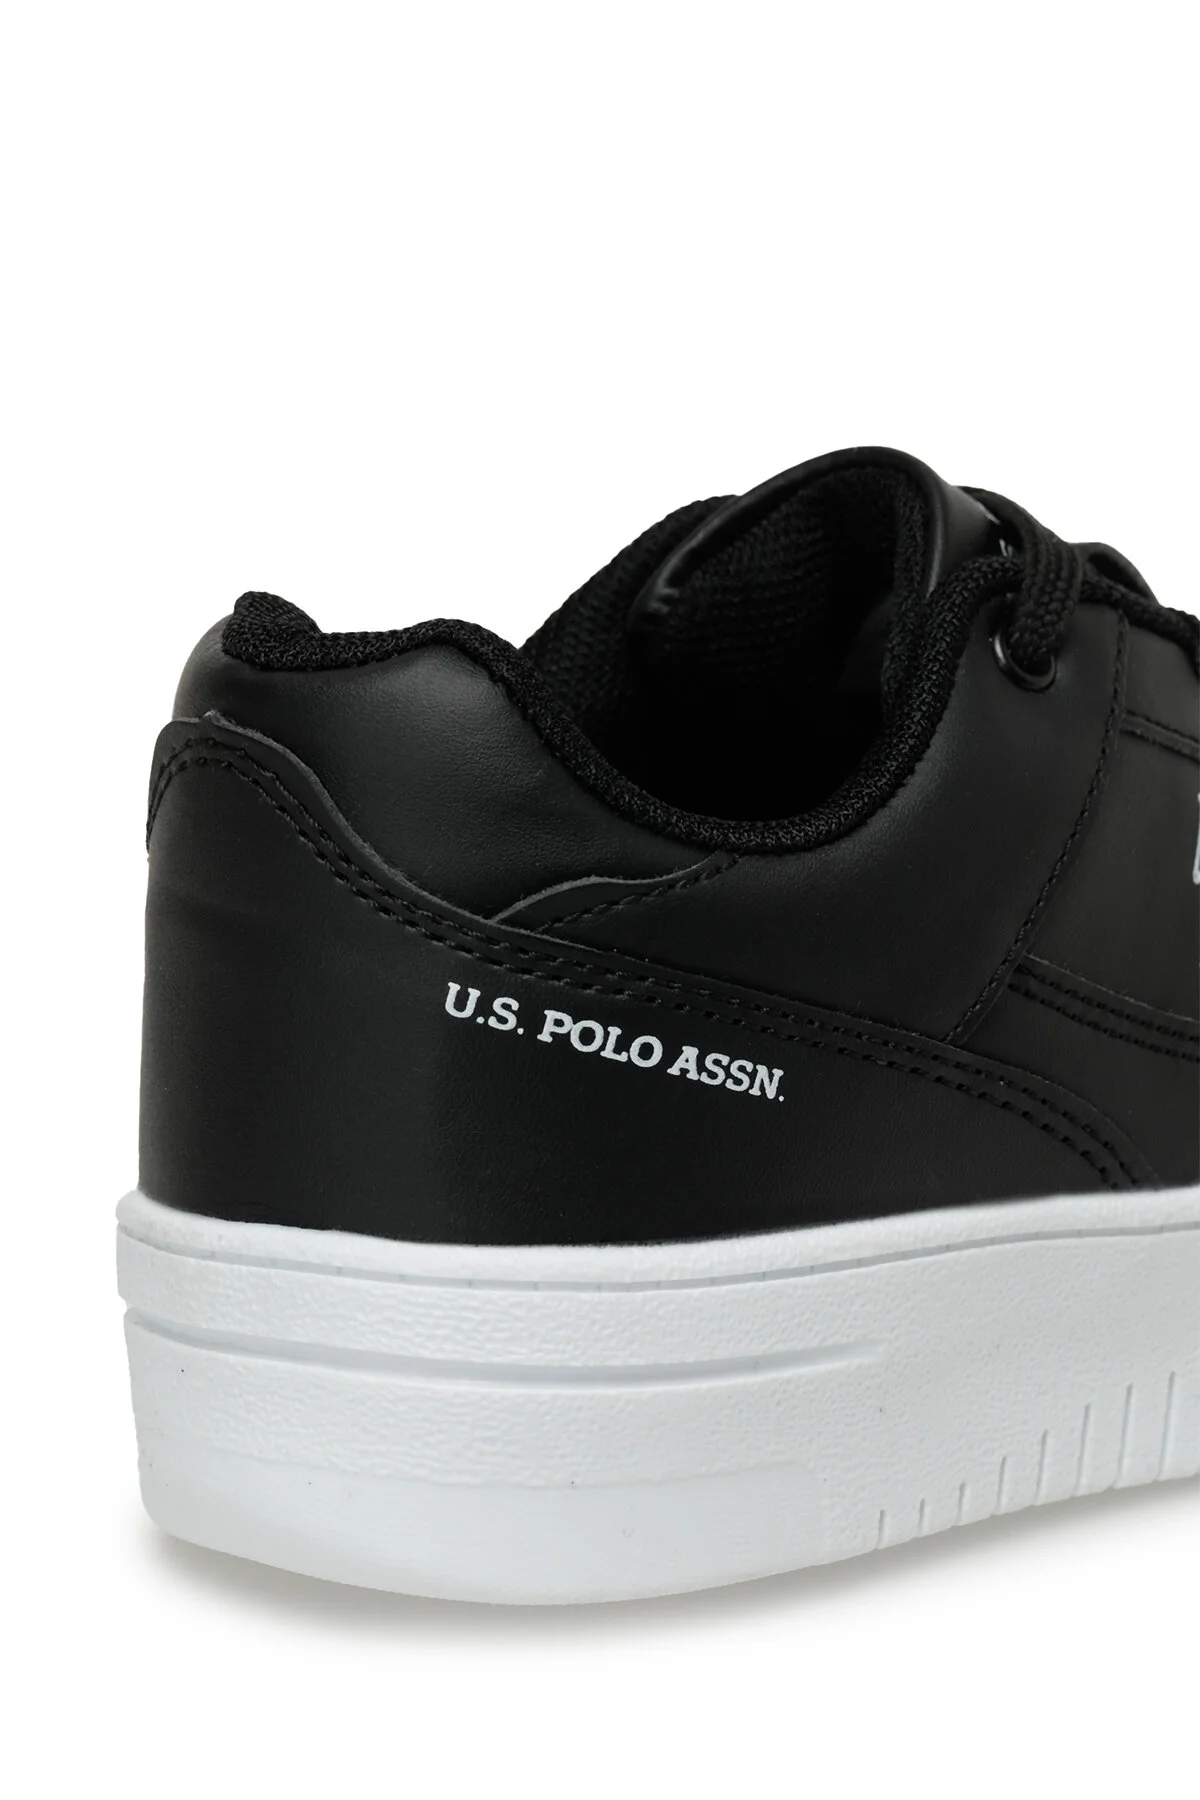 LEE WMN 3FX Kadın Sneaker Spor Ayakkabı-Siyah